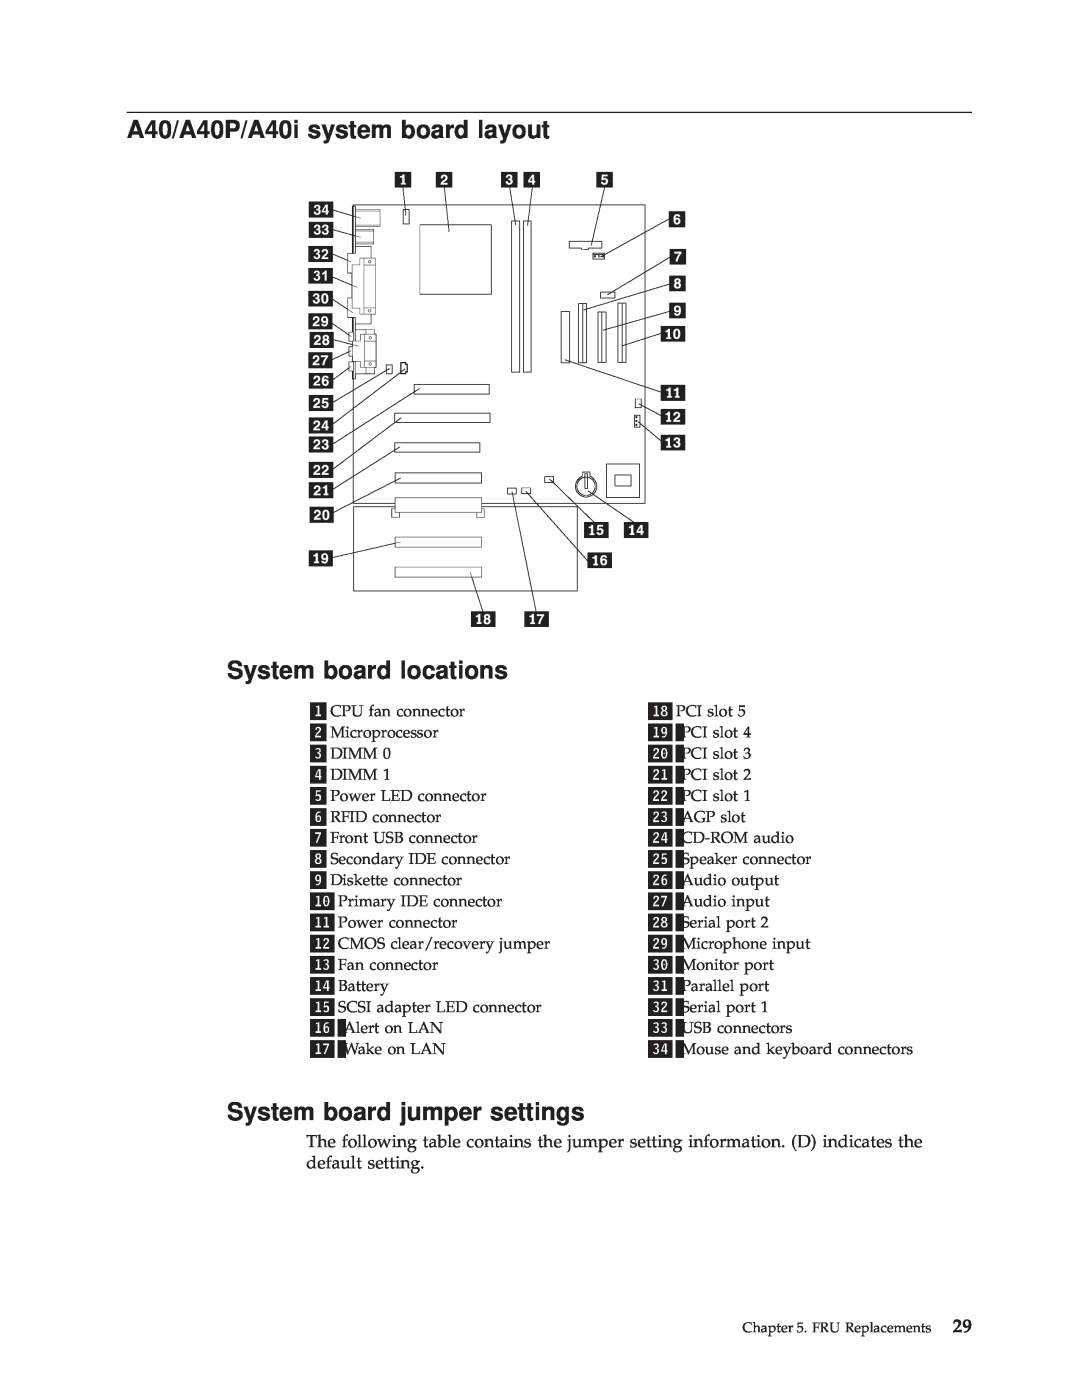 IBM A40 TYPE 6840, A40I TYPE 2271 A40/A40P/A40i system board layout, System board locations, System board jumper settings 